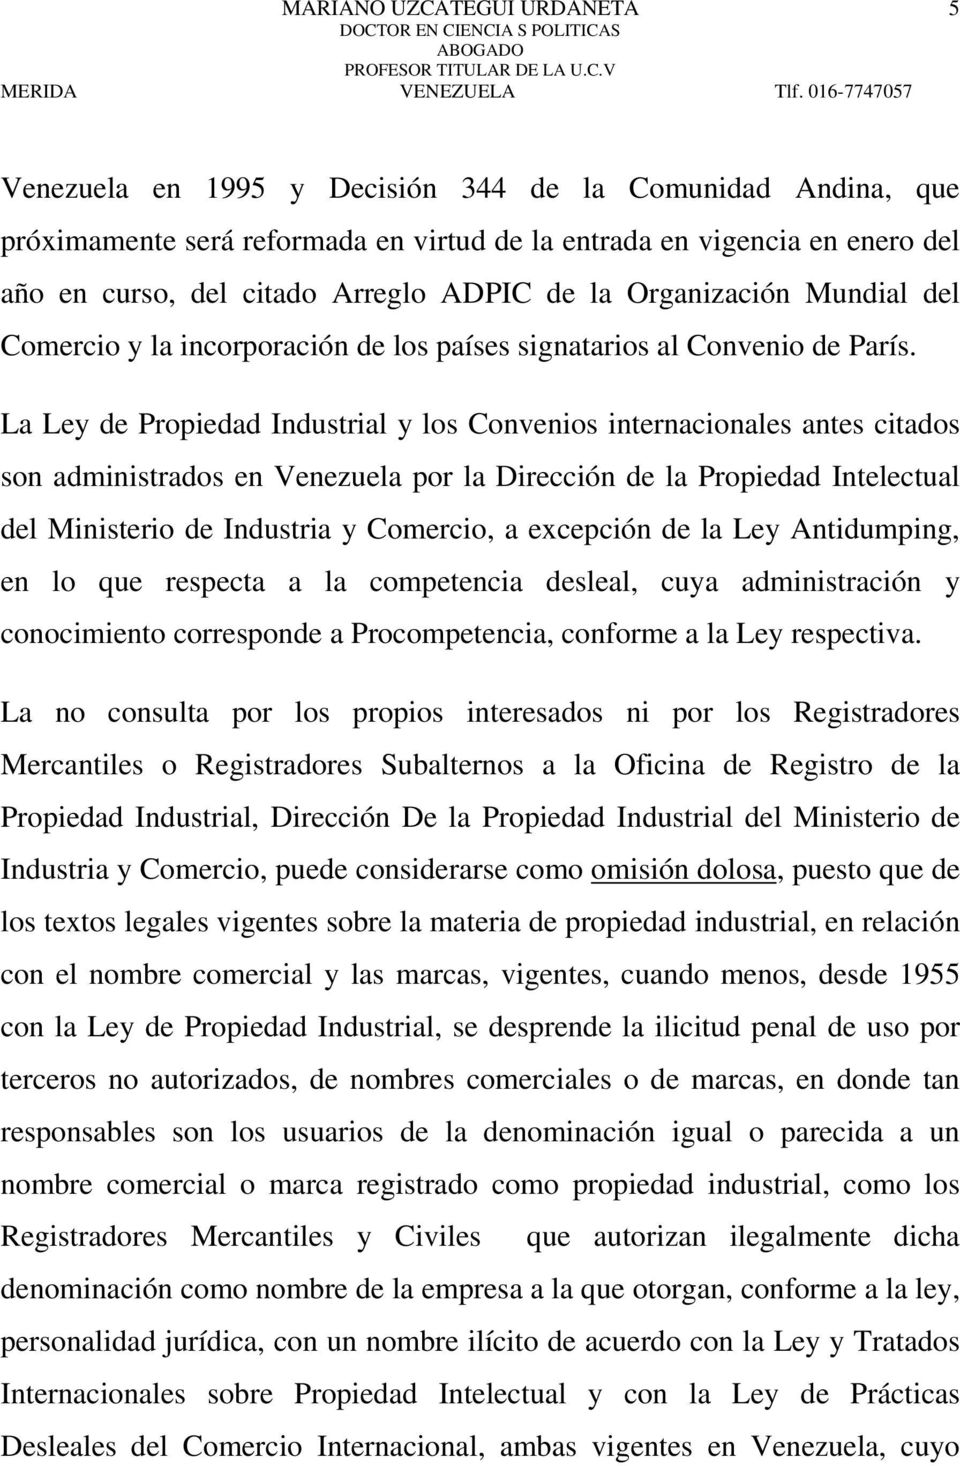 La Ley de Propiedad Industrial y los Convenios internacionales antes citados son administrados en Venezuela por la Dirección de la Propiedad Intelectual del Ministerio de Industria y Comercio, a